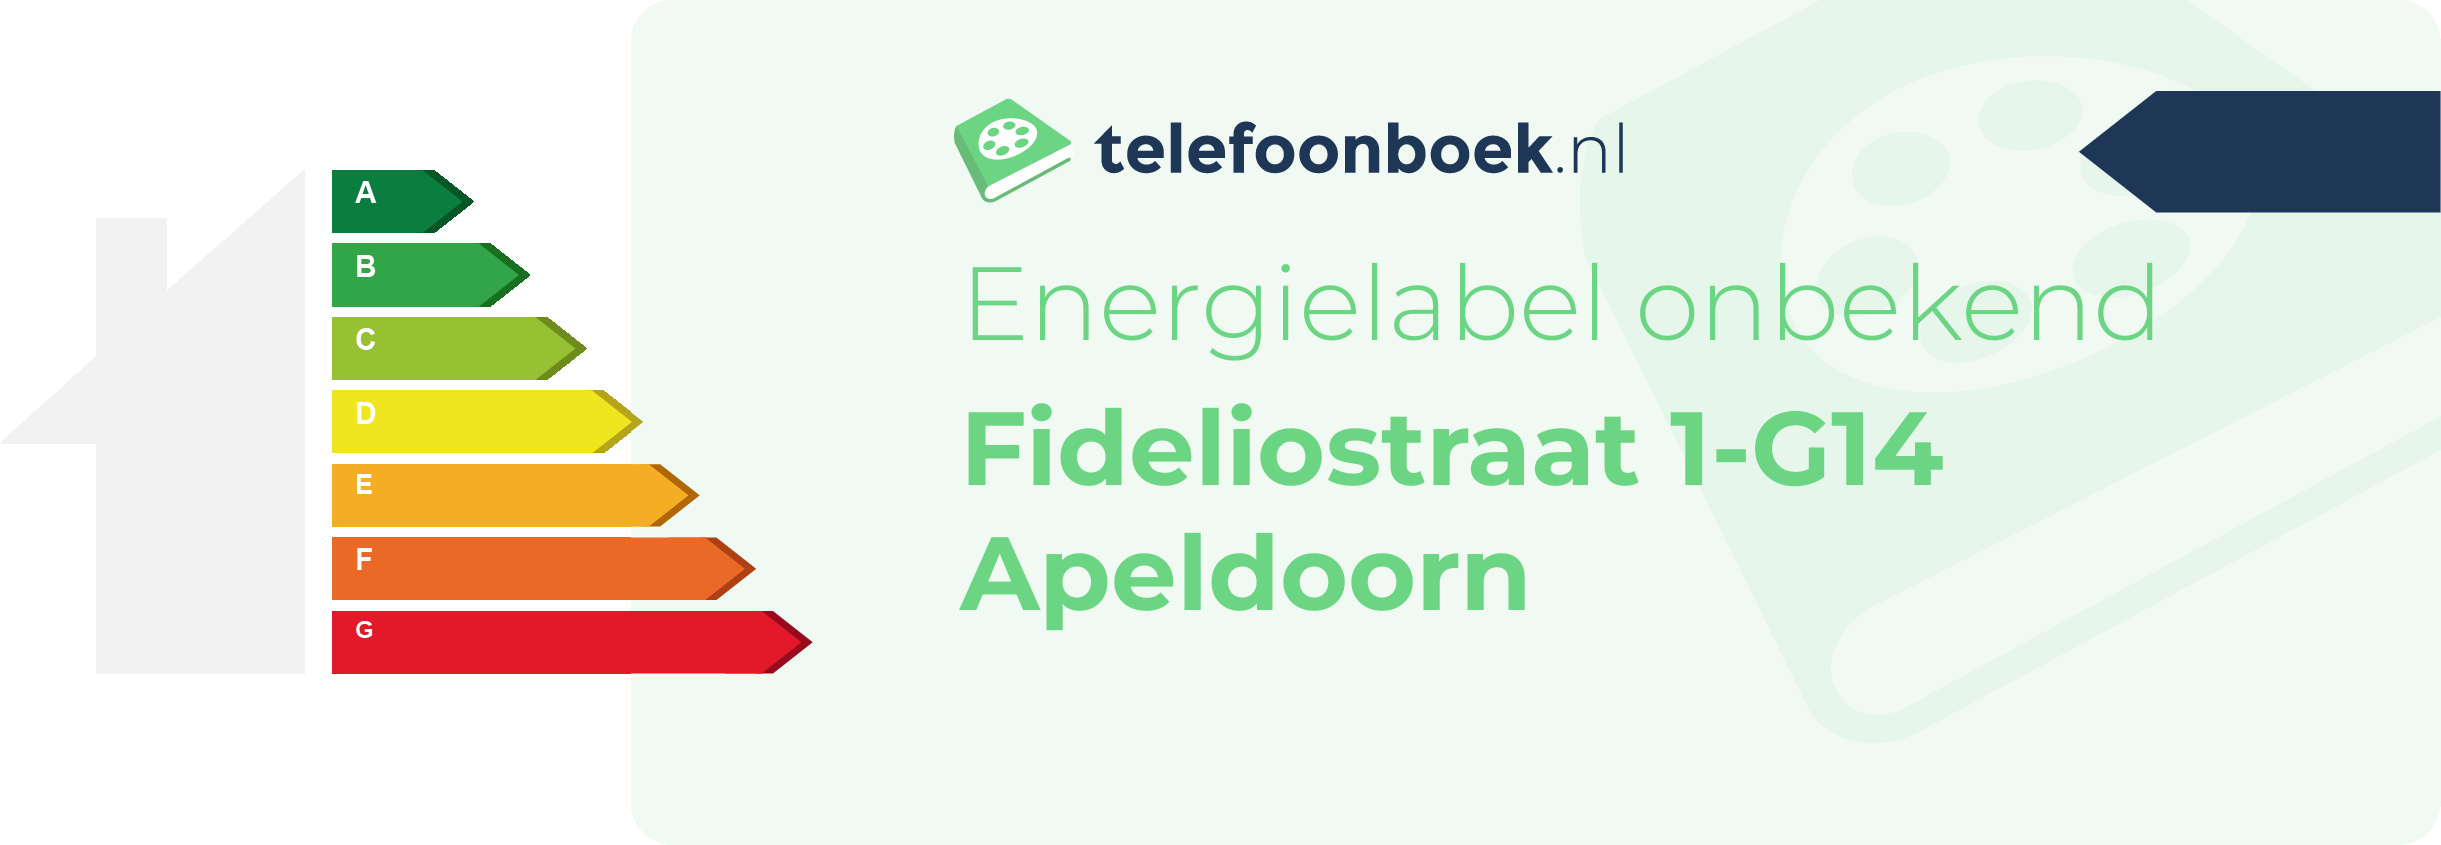 Energielabel Fideliostraat 1-G14 Apeldoorn